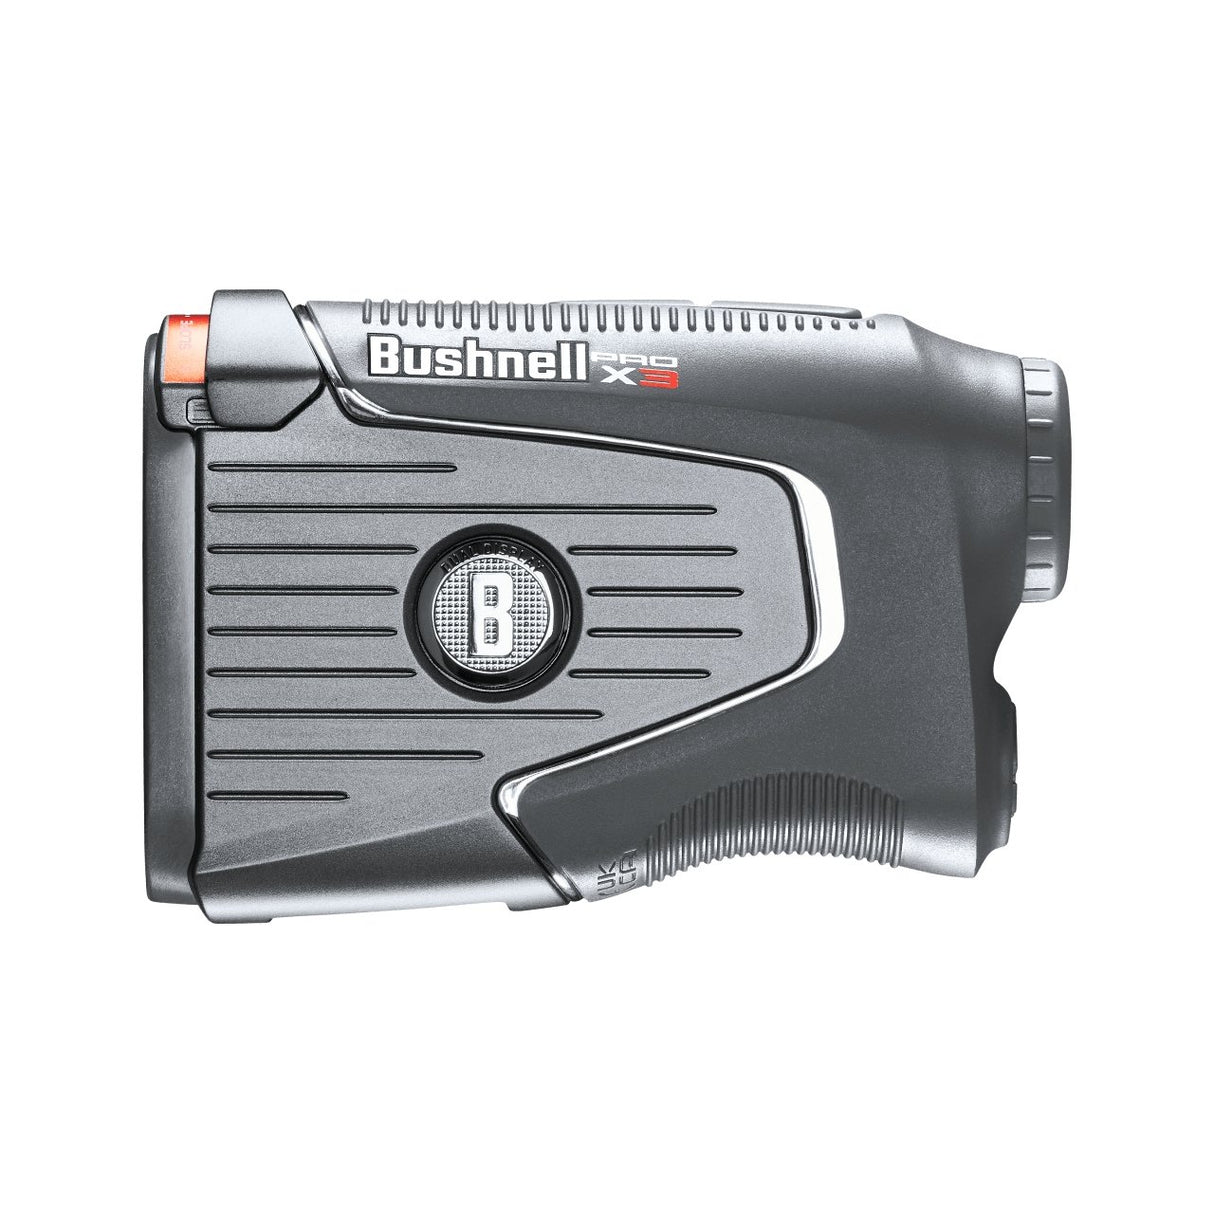 Bushnell Pro X3 Rangefinder - Niagara Golf Warehouse BUSHNELL GPS & RANGEFINDERS